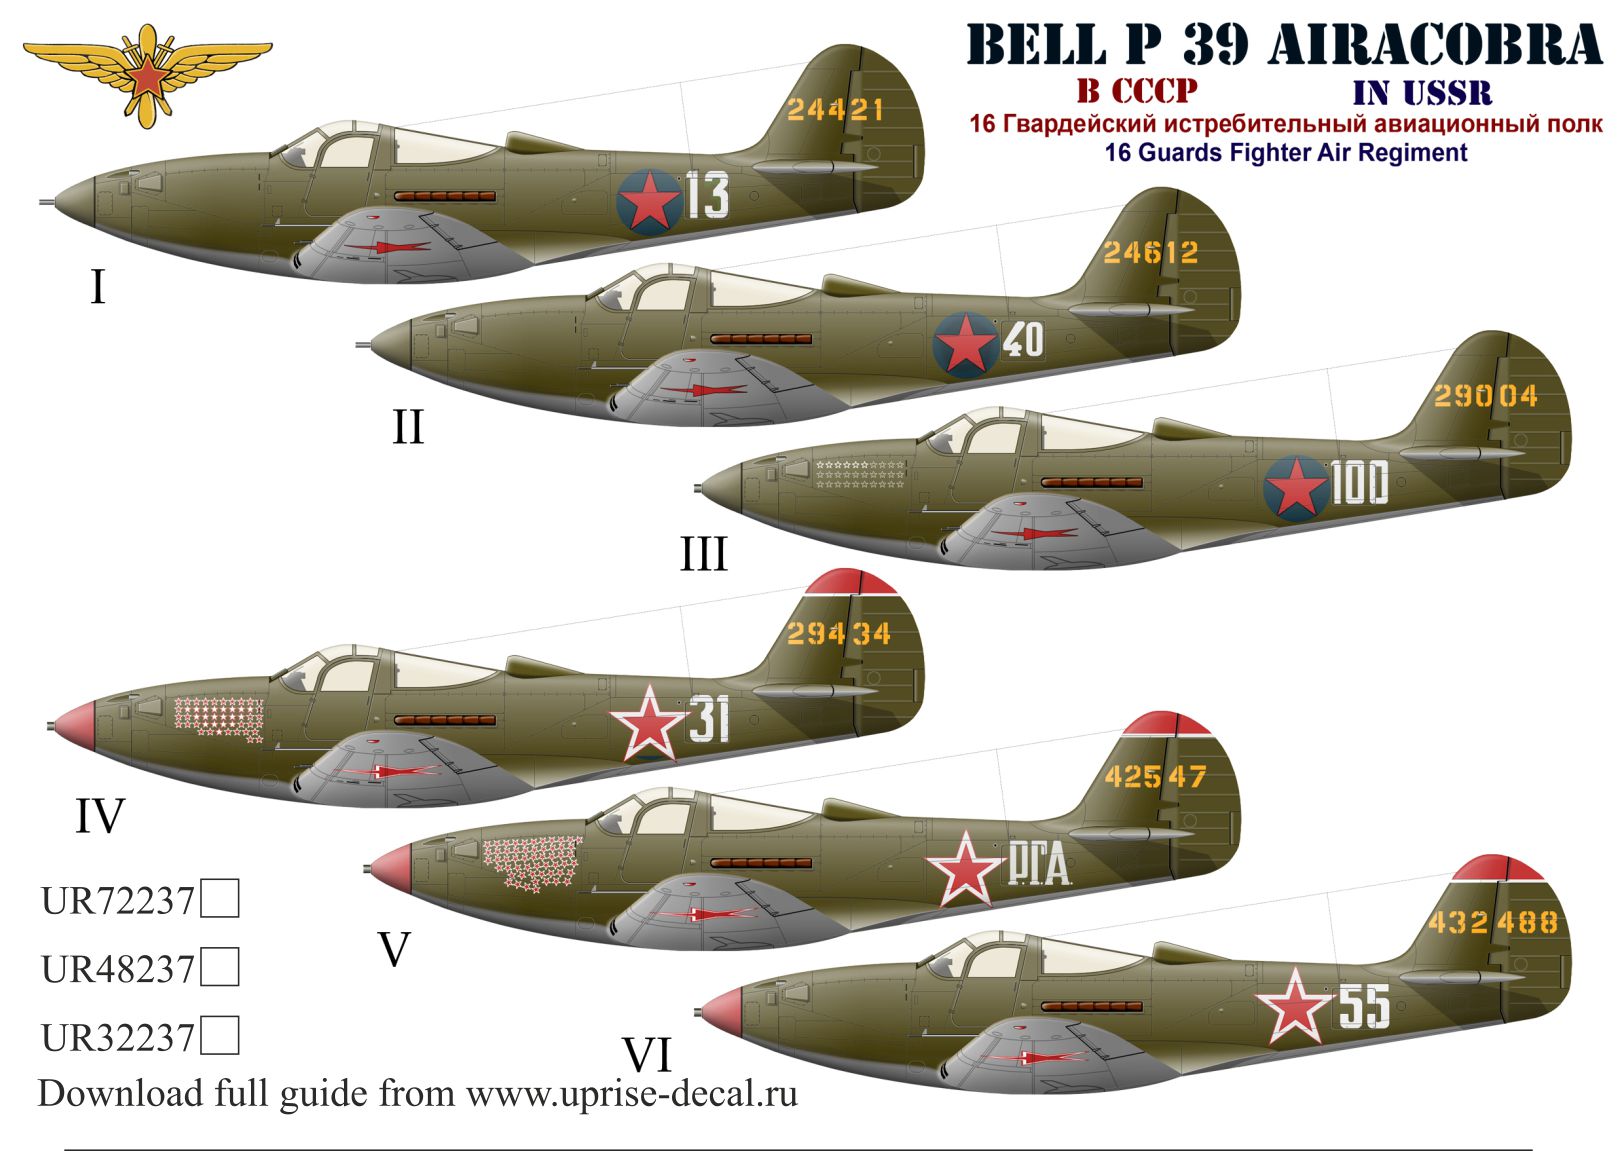 UR48237  декали  P-39 Airacobra 16 GvIAP with stencils  (1:48)